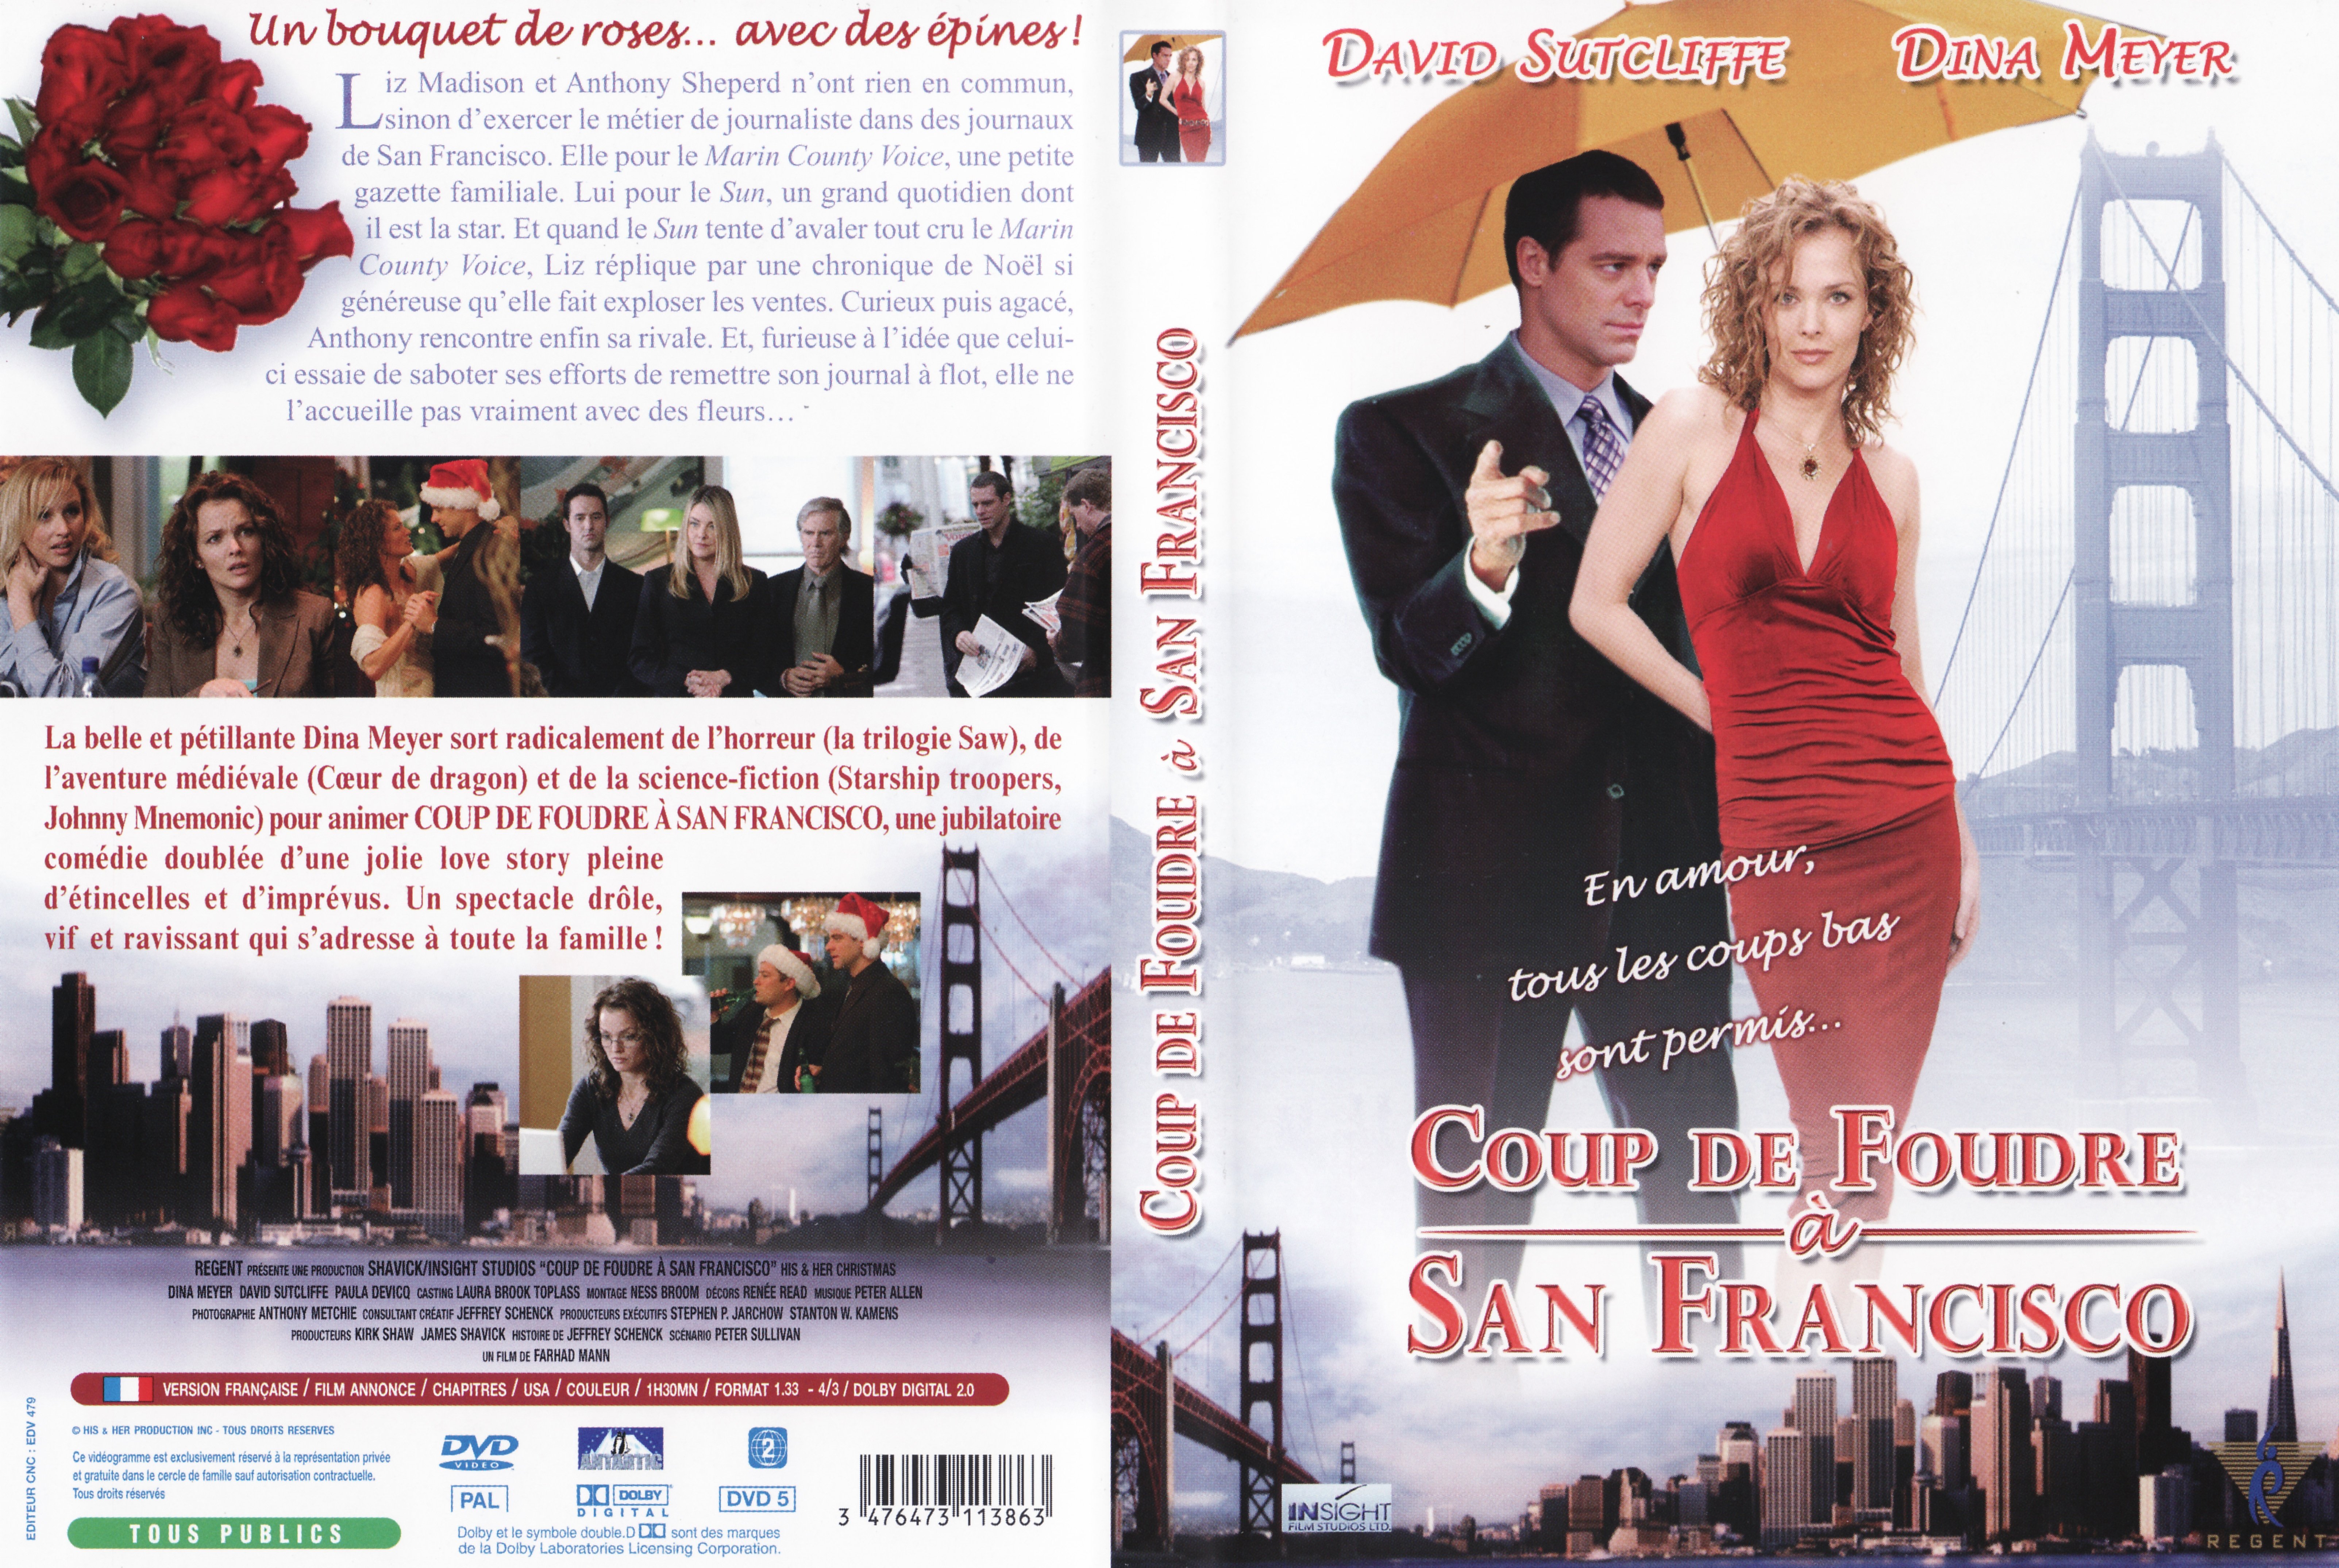 Jaquette DVD Coup de foudre  San Francisco